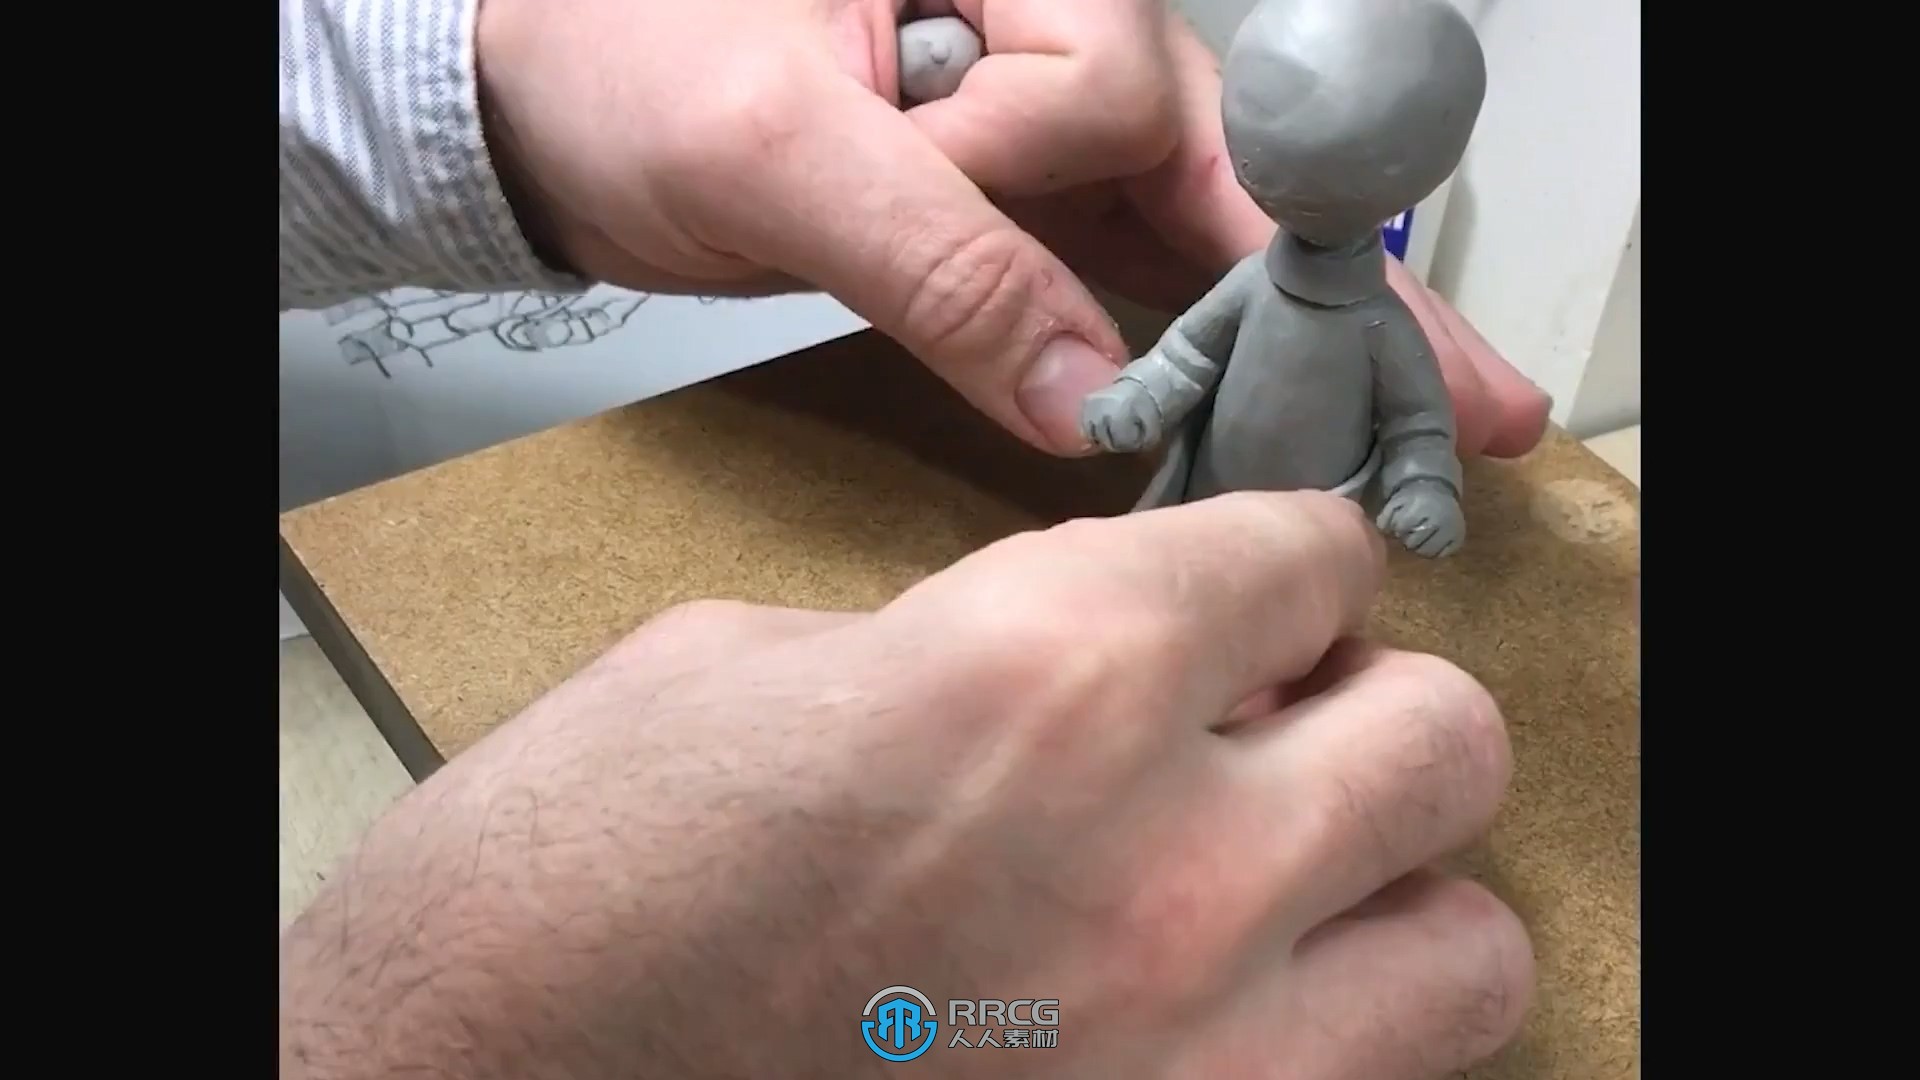 吉卜力风格人物雕塑雕刻制作大师级视频教程